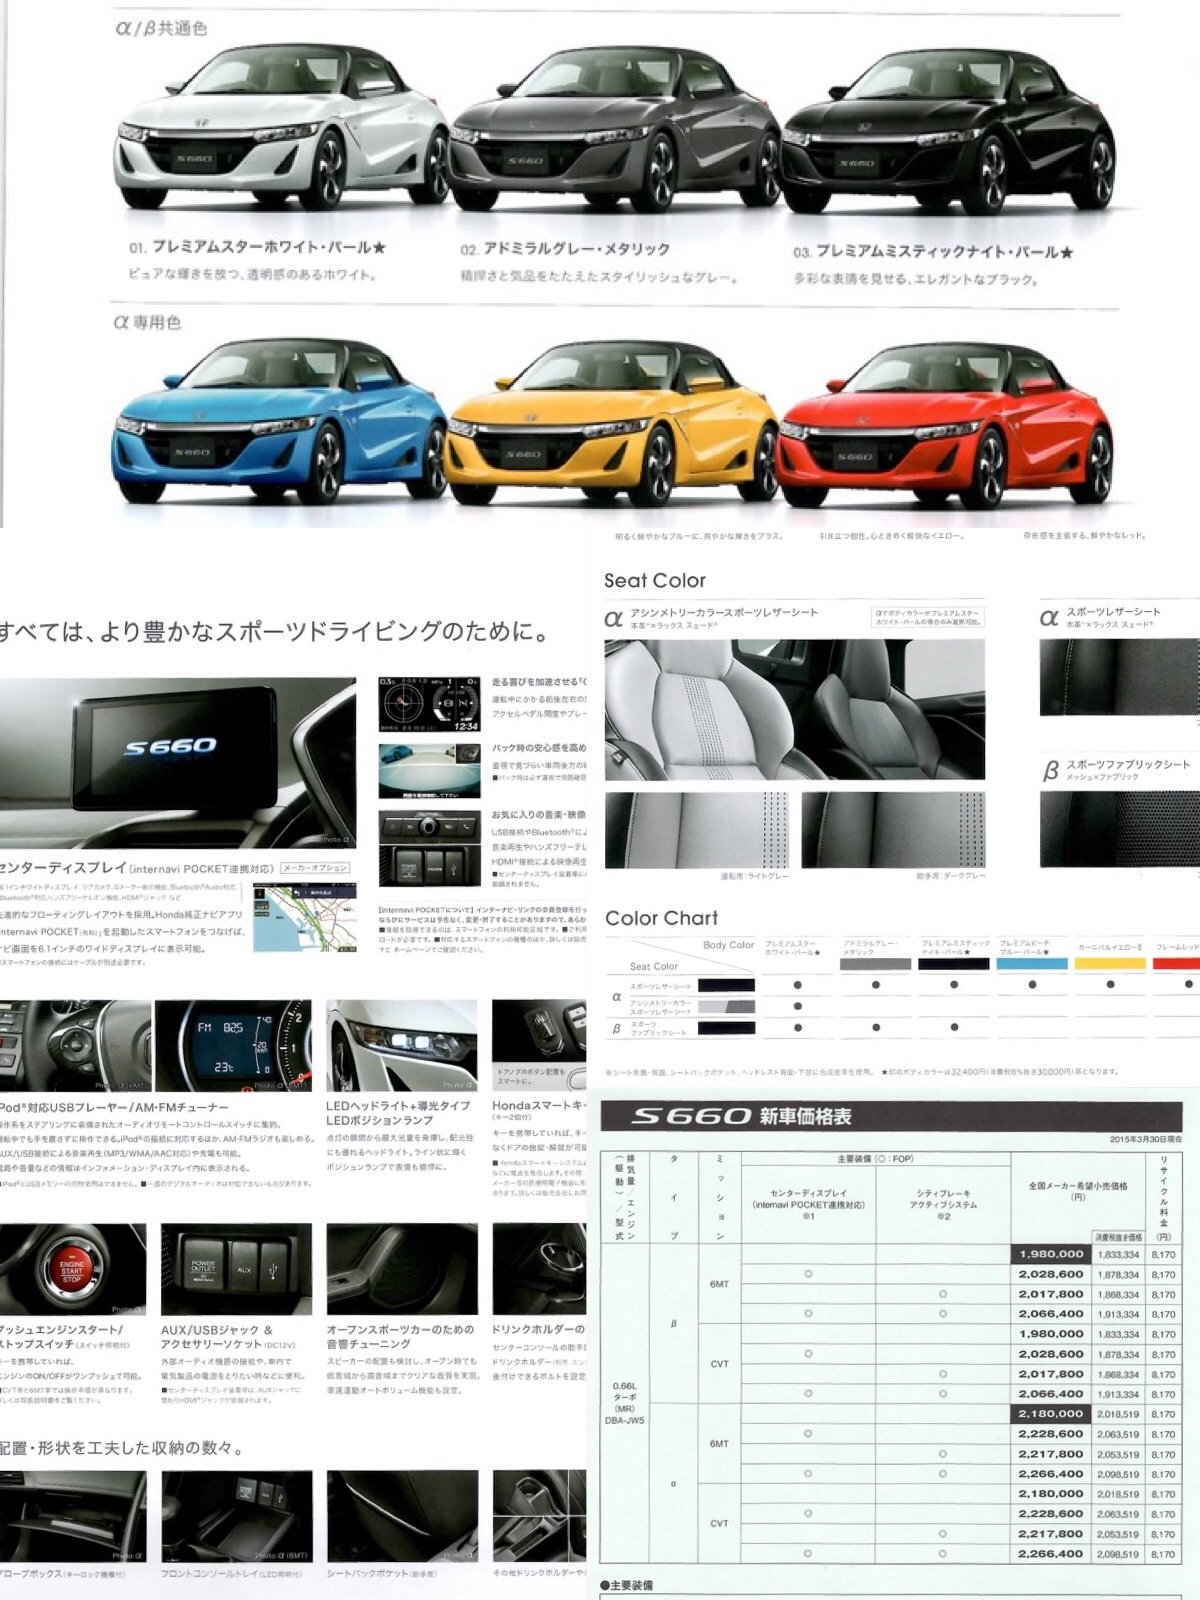 お買い得 ホンダ S660 カタログ アクセサリー 2015年3月 JW5 sdspanama.com